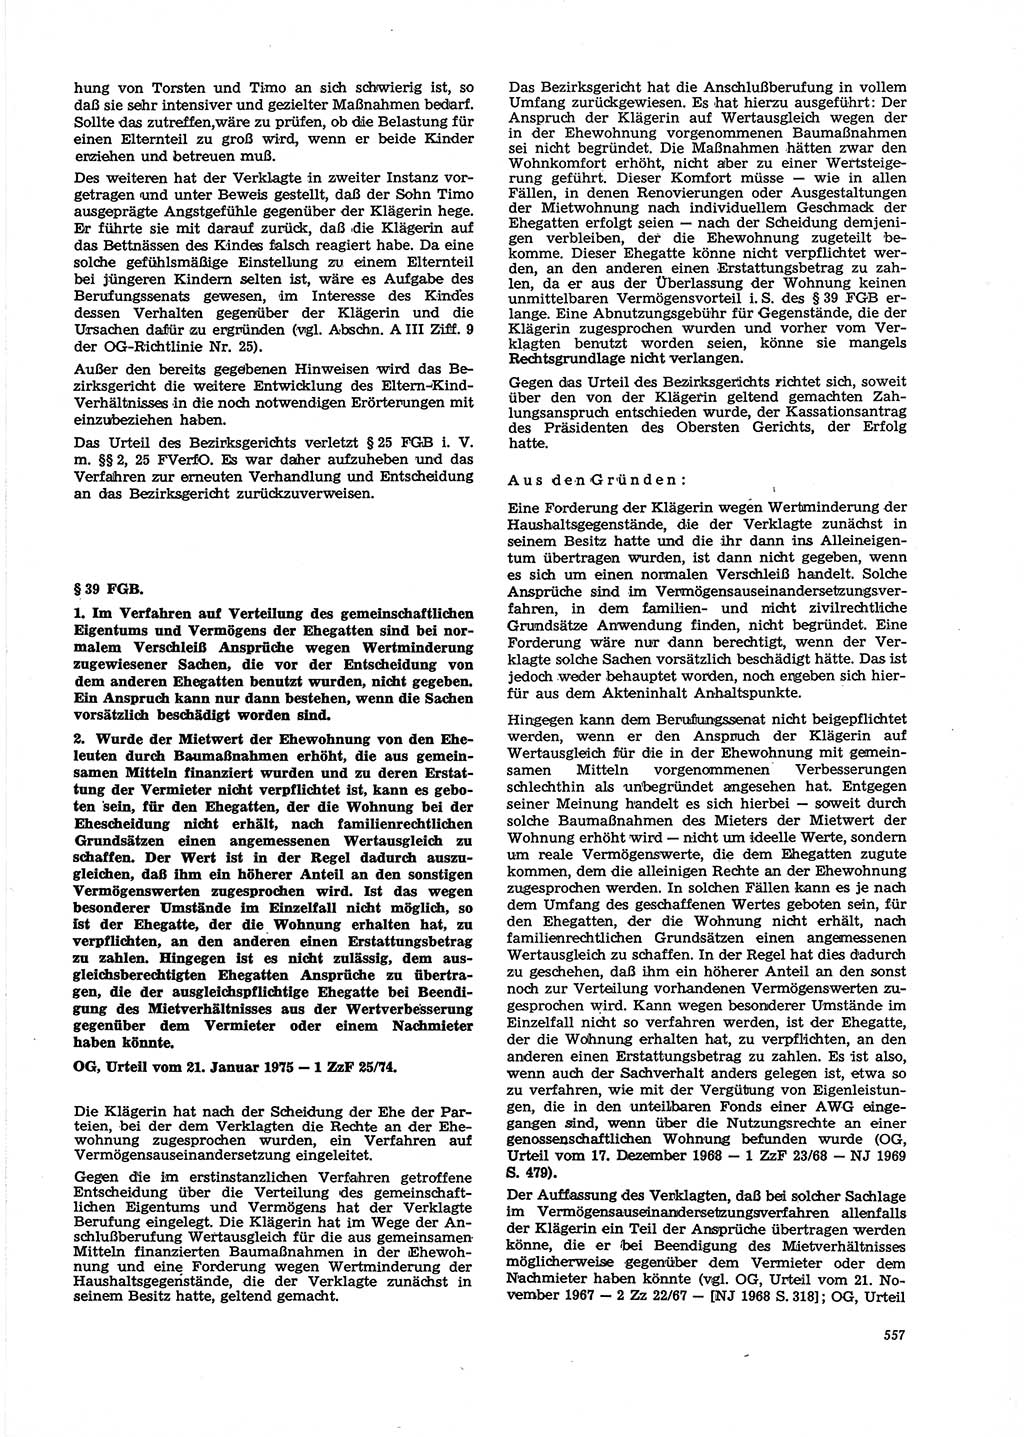 Neue Justiz (NJ), Zeitschrift für Recht und Rechtswissenschaft [Deutsche Demokratische Republik (DDR)], 29. Jahrgang 1975, Seite 557 (NJ DDR 1975, S. 557)